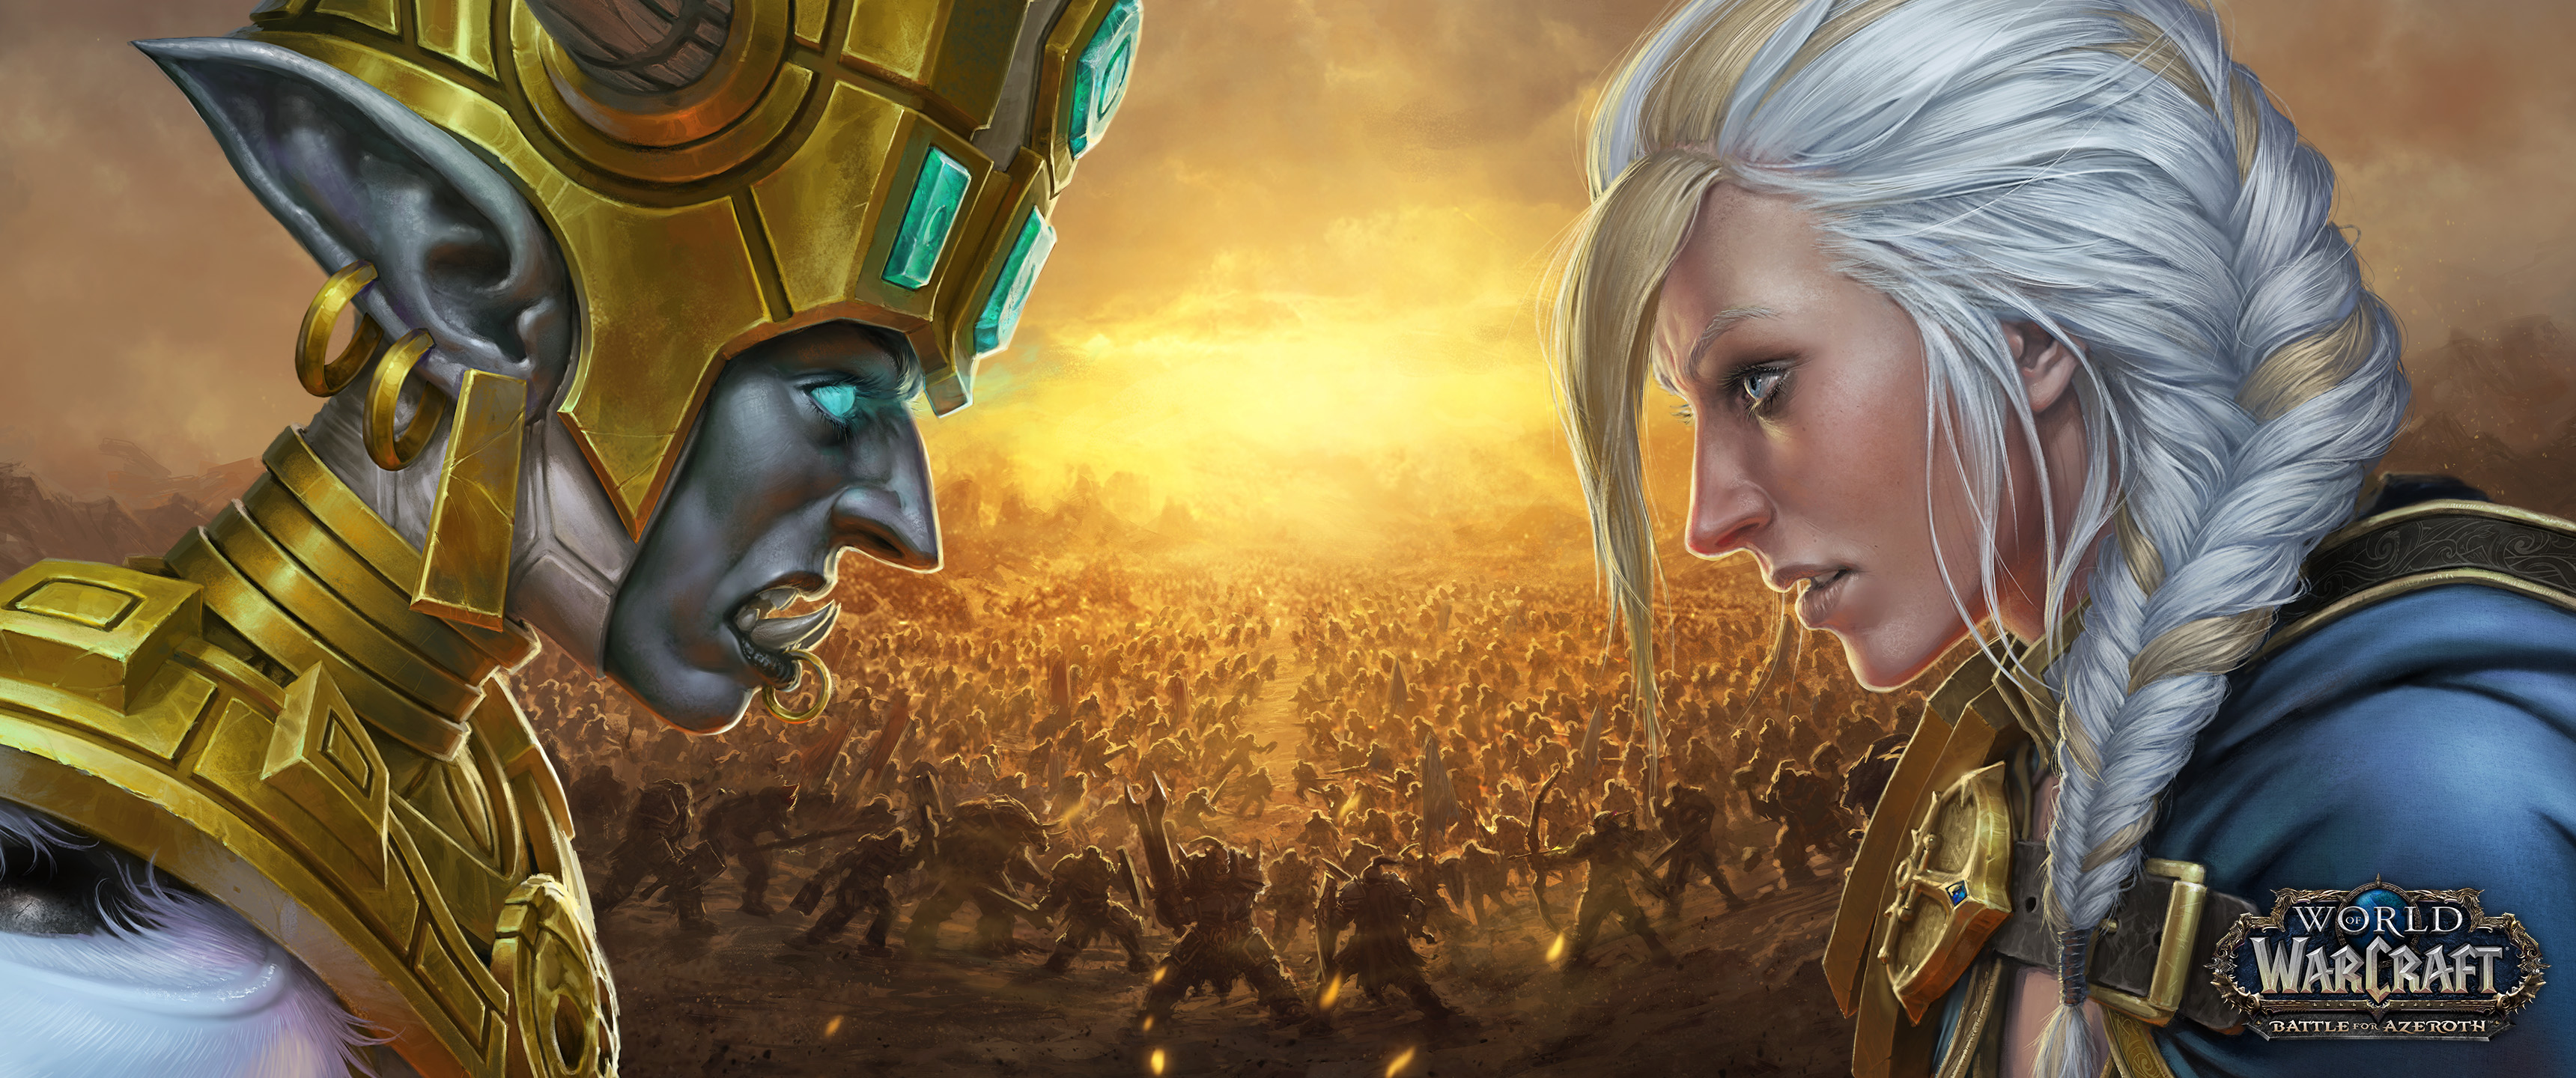 Скачать обои бесплатно Видеоигры, Мир Warcraft, Мир Warcraft: Битва За Азерот картинка на рабочий стол ПК